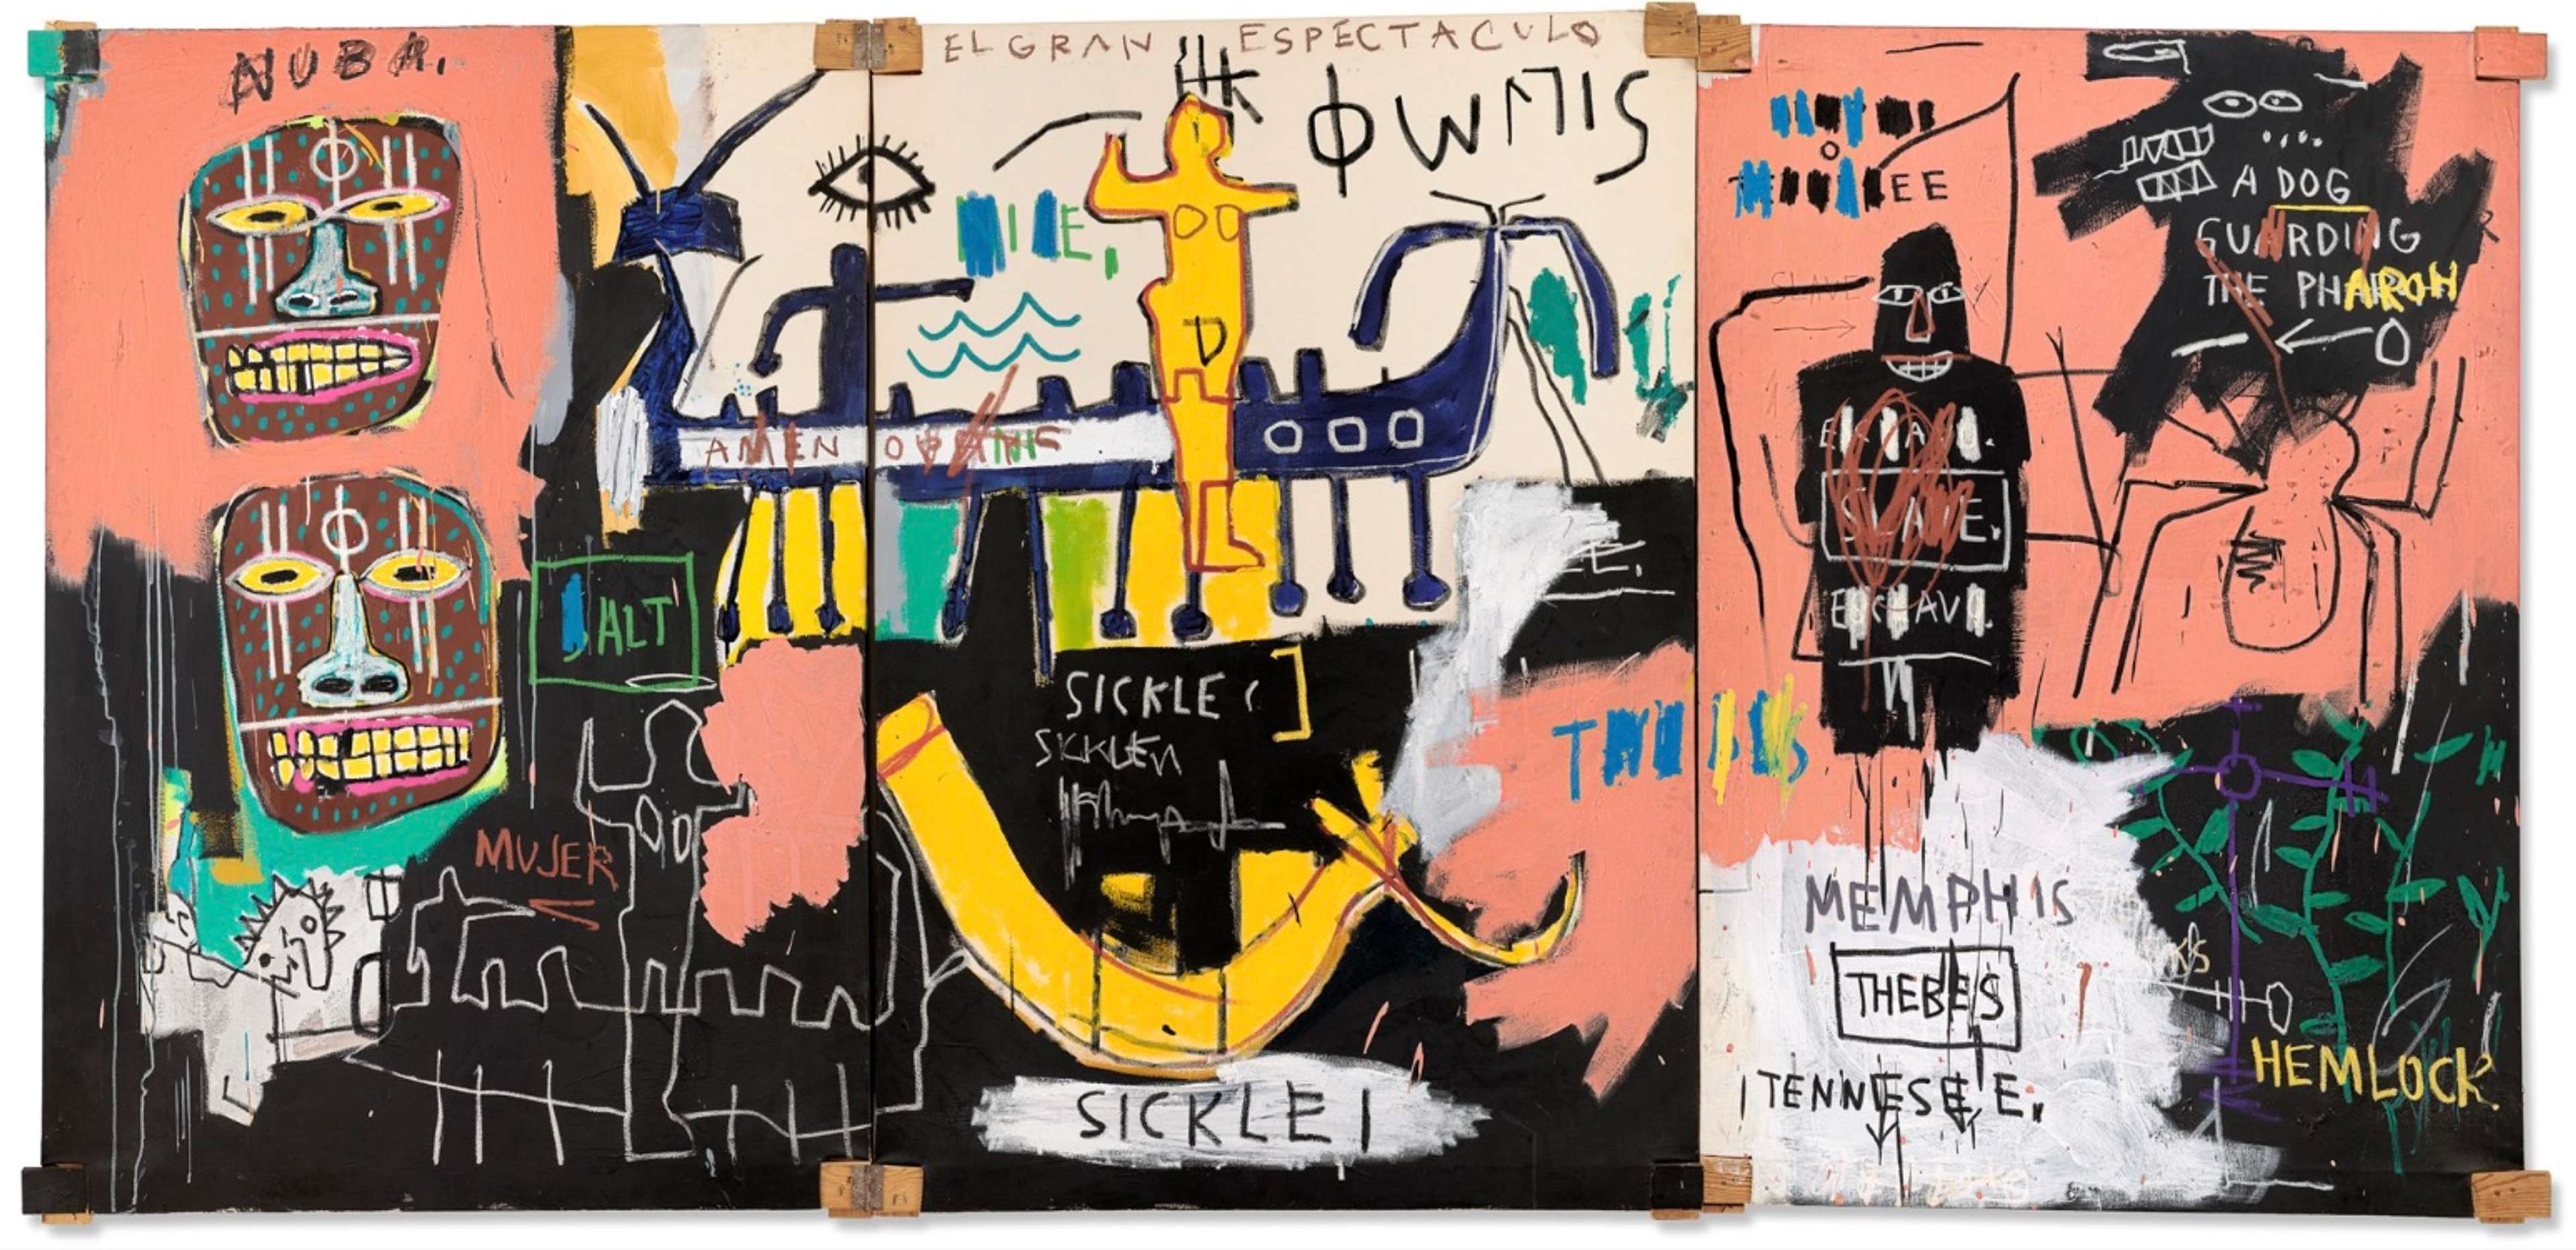 El Gran Espectaculo (The Nile) by Jean-Michel Basquiat 